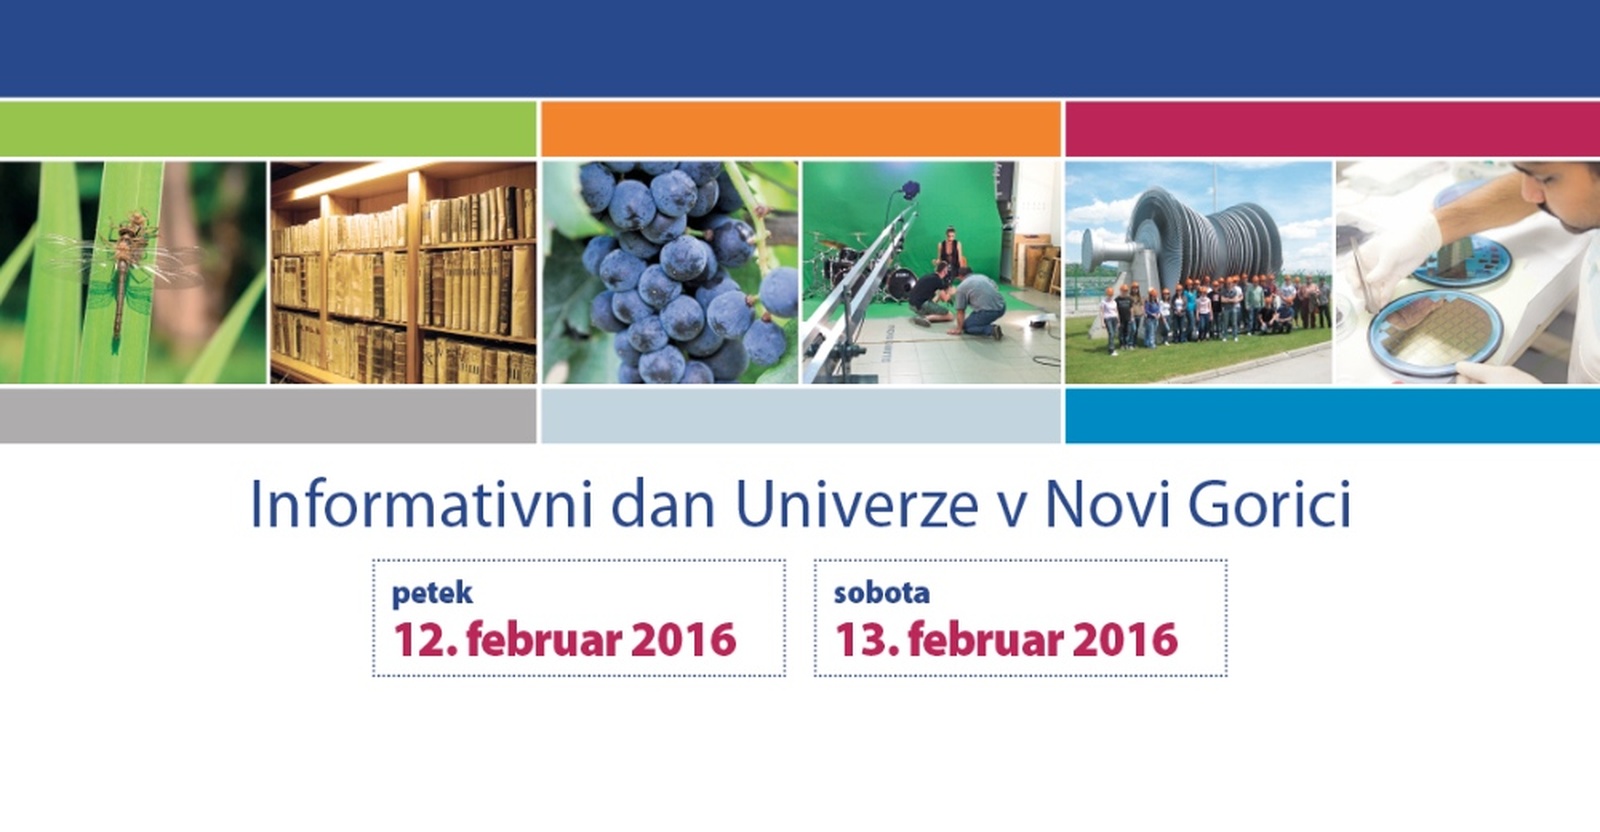 Informativni dan Univerze v Novi Gorici